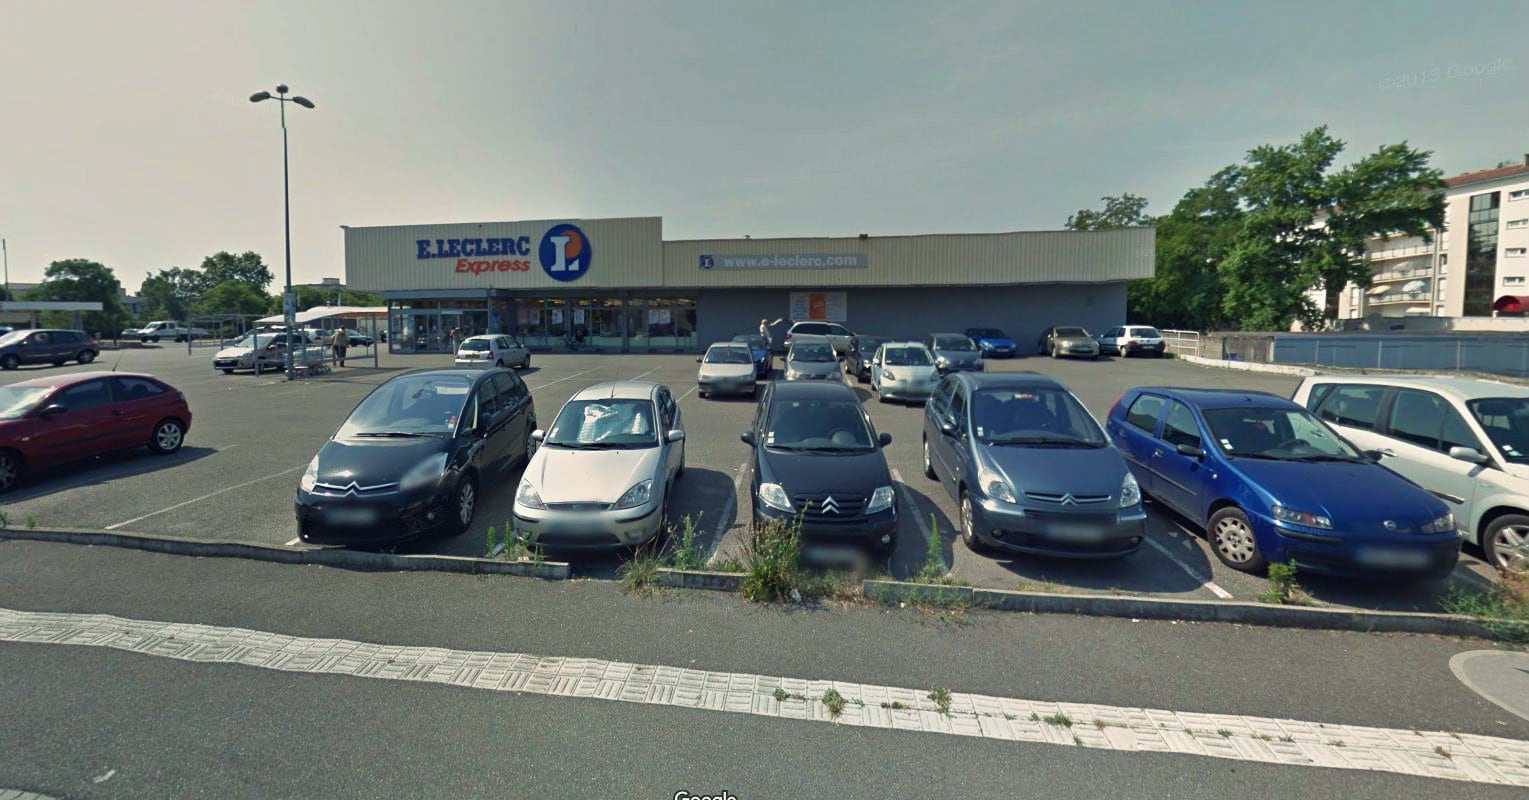 Le magasin E. Leclerc Express à Illkirch-Graffenstaden, souvent apprécié des habitants pour sa proximité (Photo Google Maps)